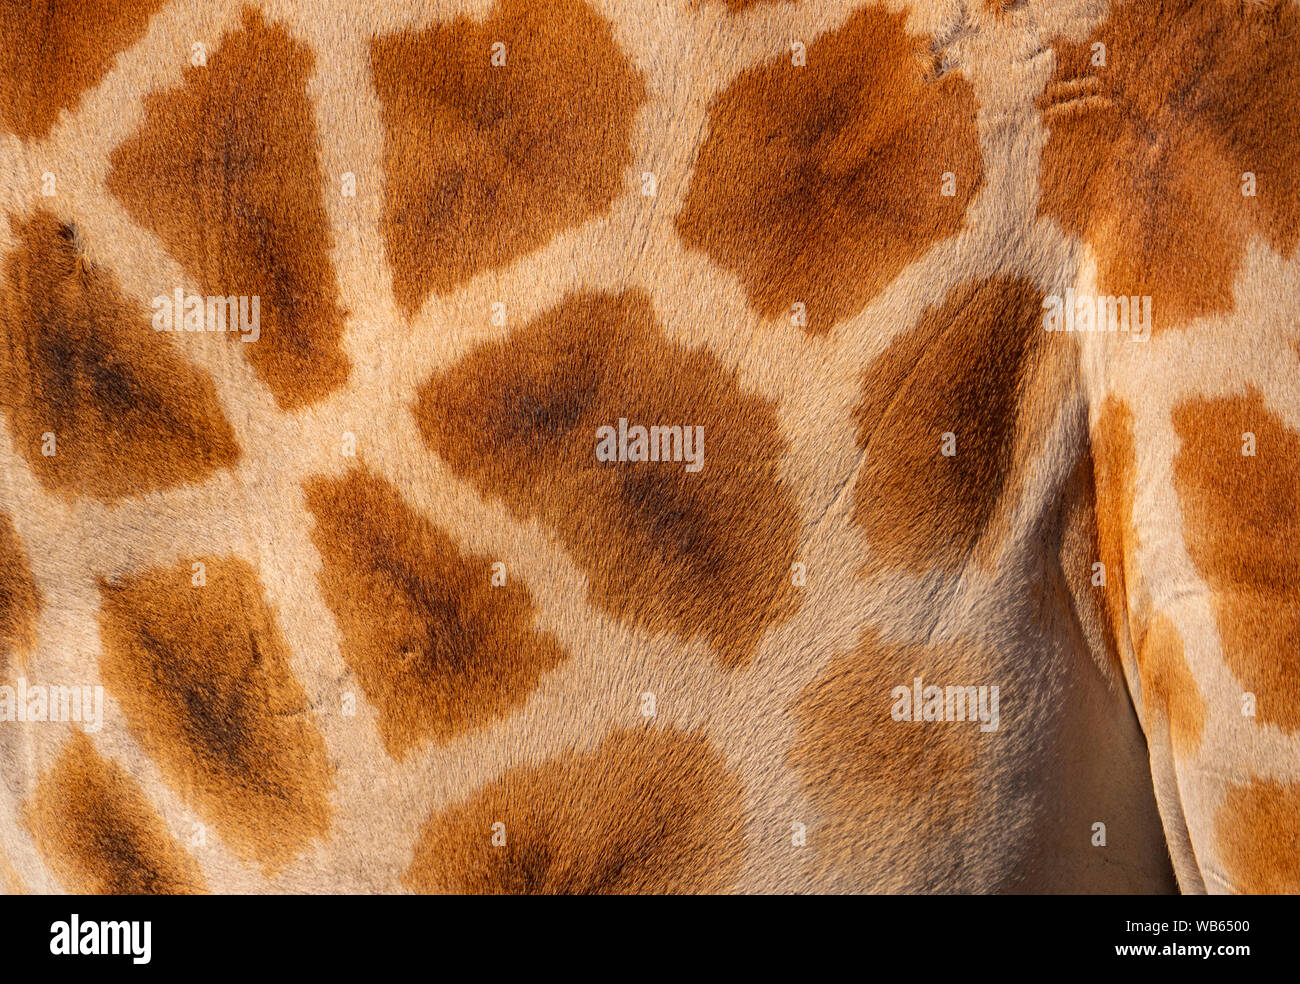 Giraffen, Giraffa, haut Hintergrund ausblenden Schließen, Spots, Haare und Textur einschließlich Flecken und weißen Linien. Stockfoto